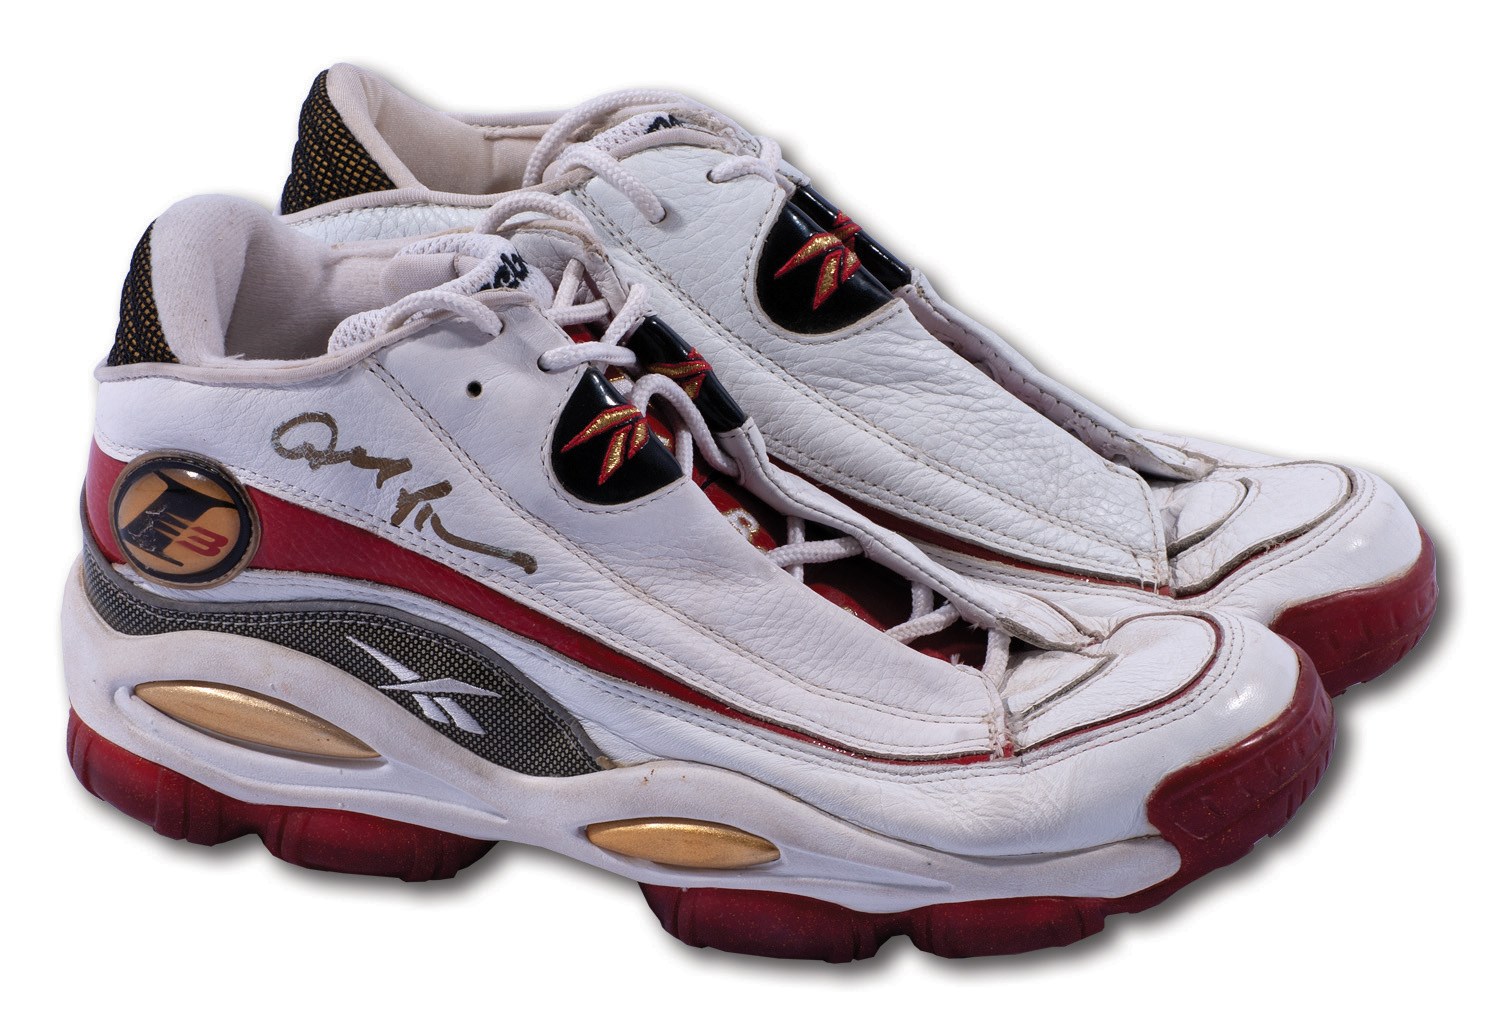 1997 reebok basketball shoes